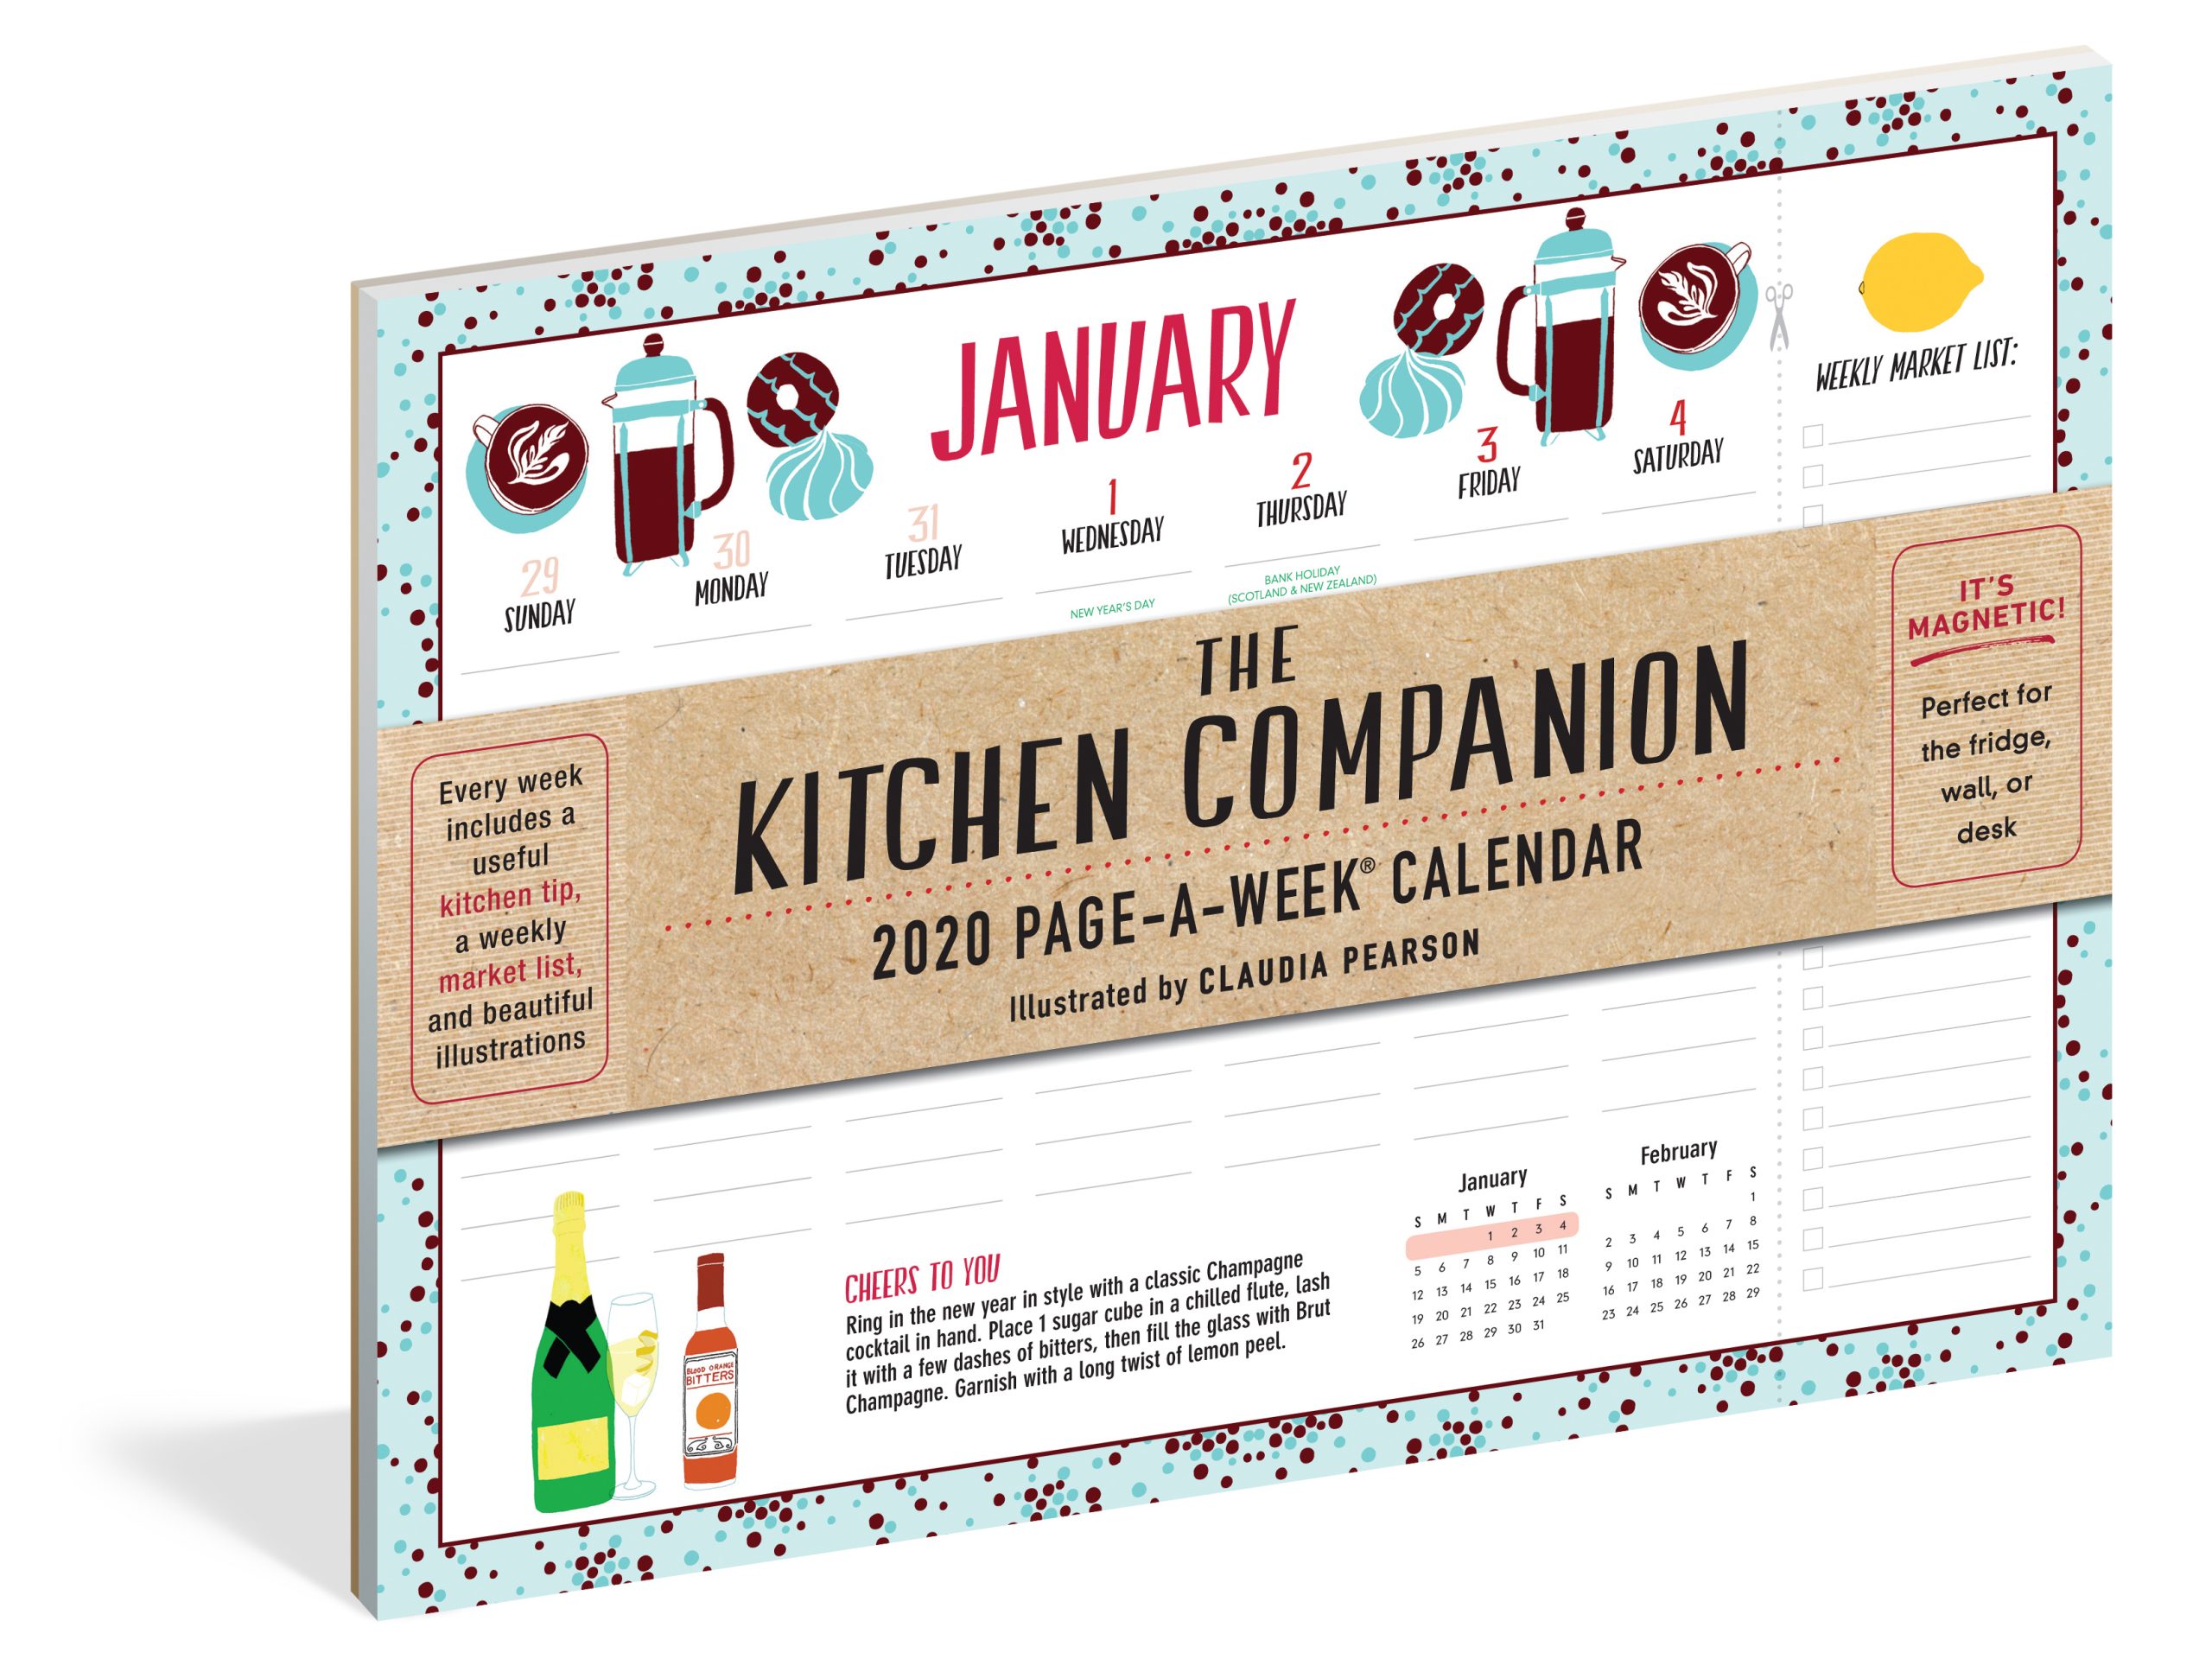 2020-kitchen-companion-calendar-claudia-pearson-illustration